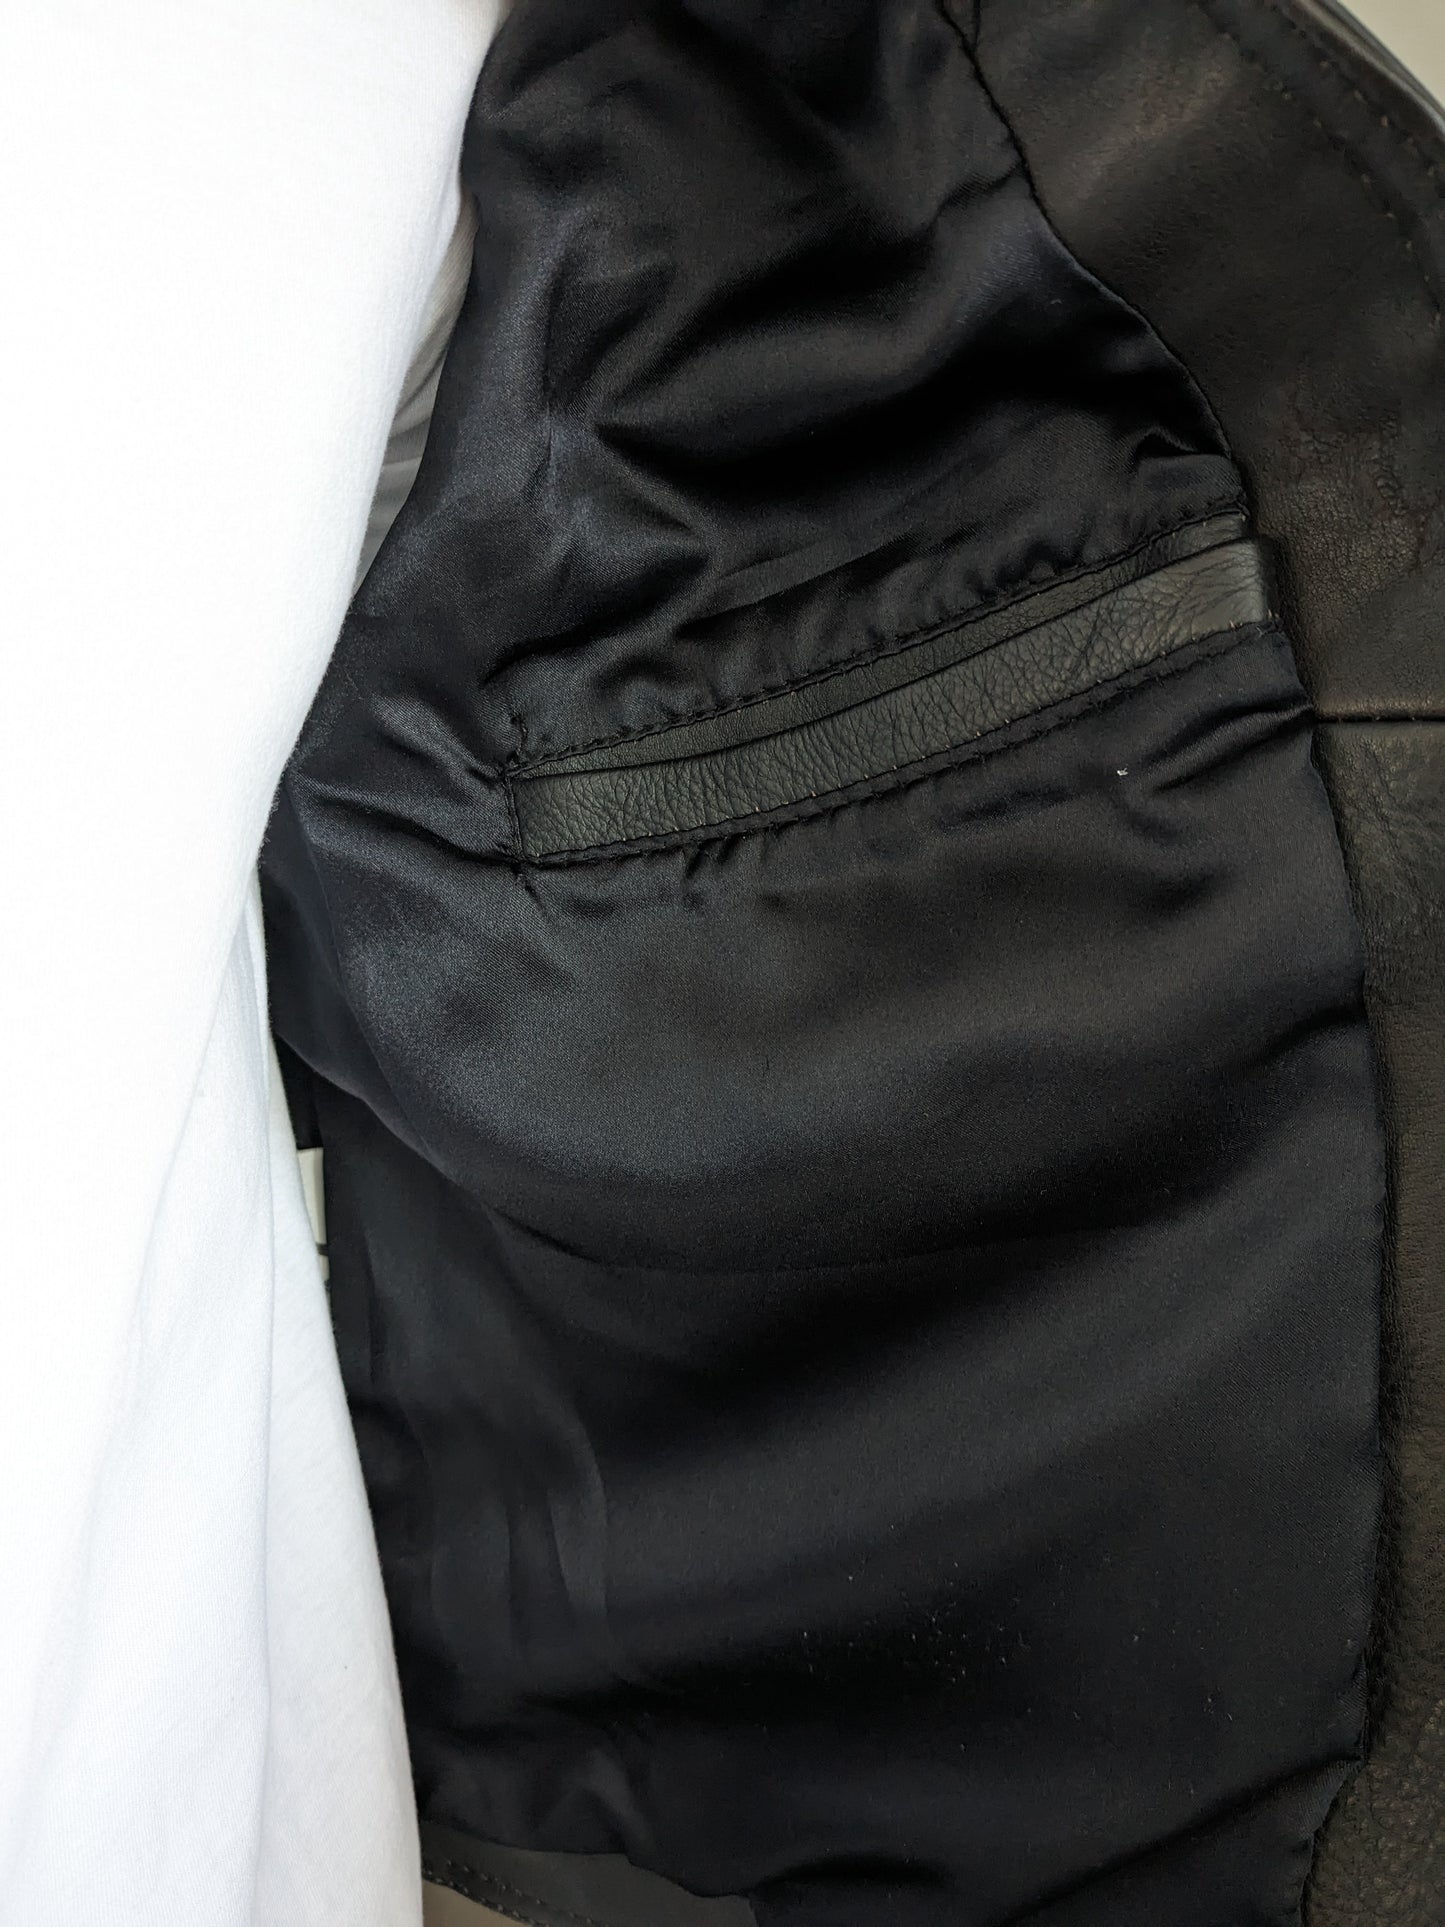 Calco / gilet in pelle vintage degli anni '80 anni '80 con molti sacchi e 2 tasche interne. Marrone scuro. Dimensione S / M.